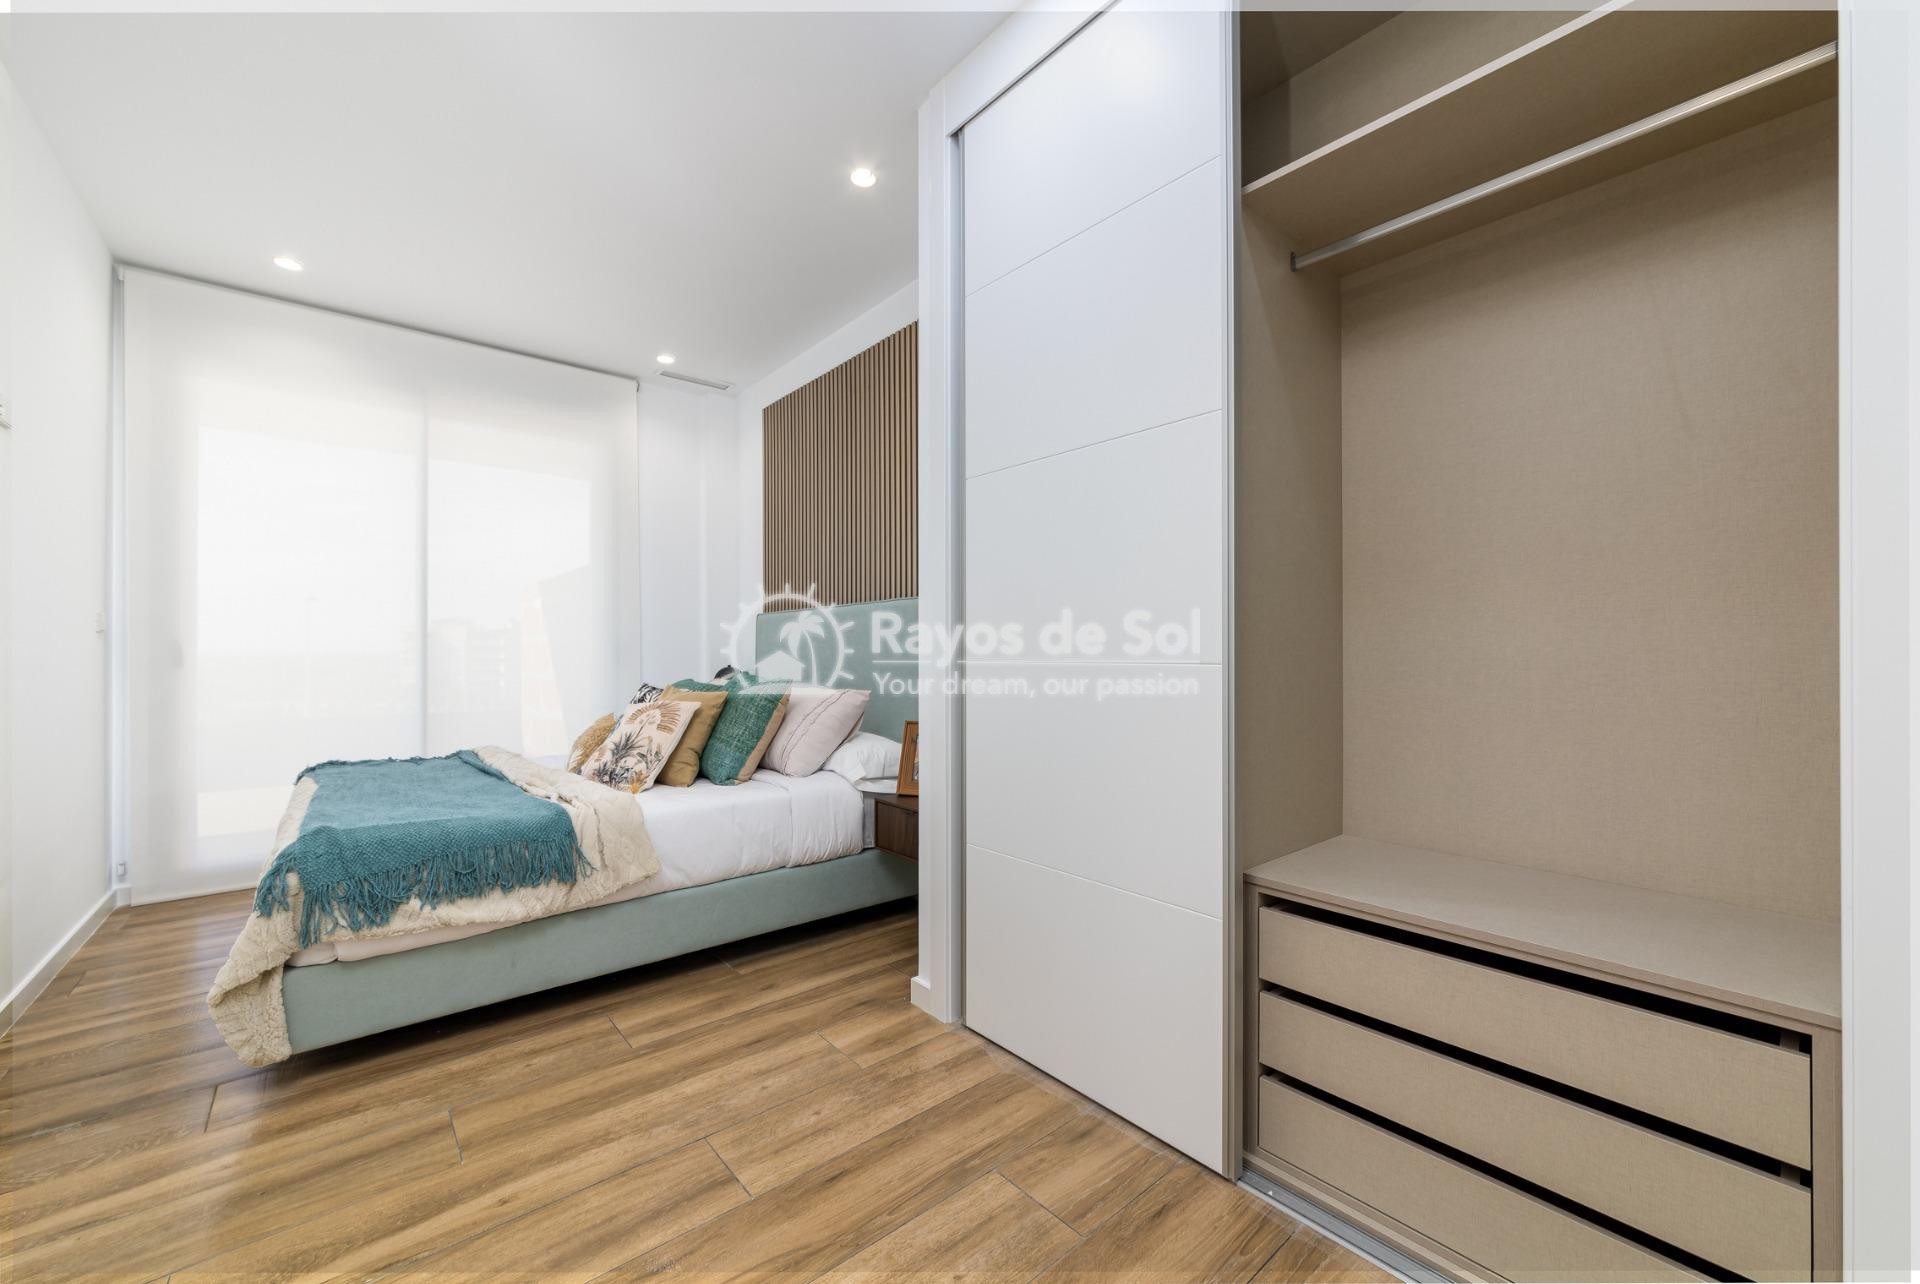 Ground floor apartment  in Arenales del Sol, Santa Pola, Costa Blanca (rds-n7218) - 39